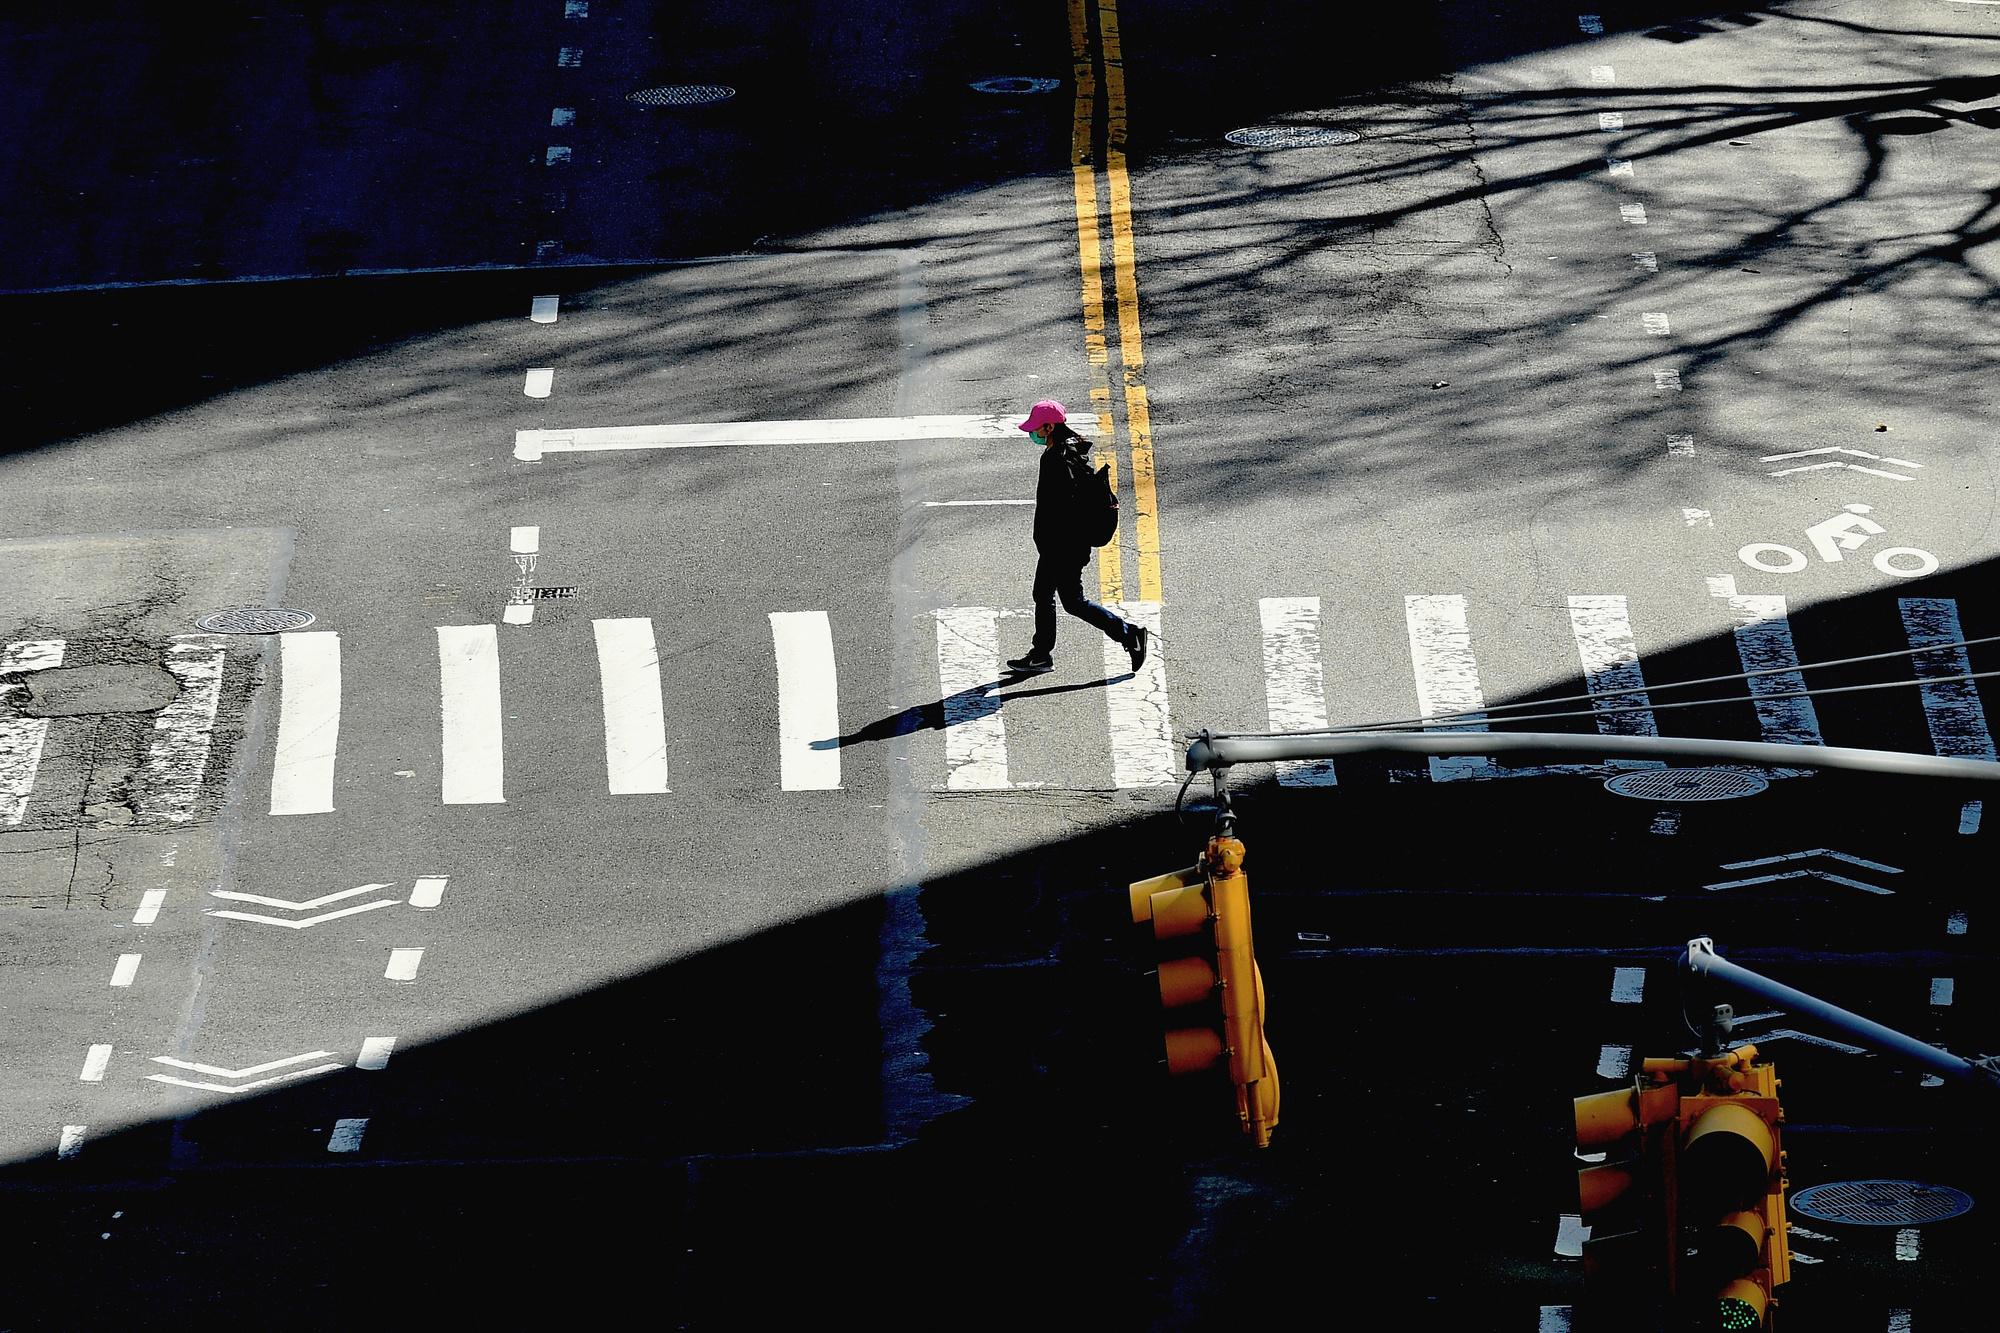 Une personne traversant la rue à New York.